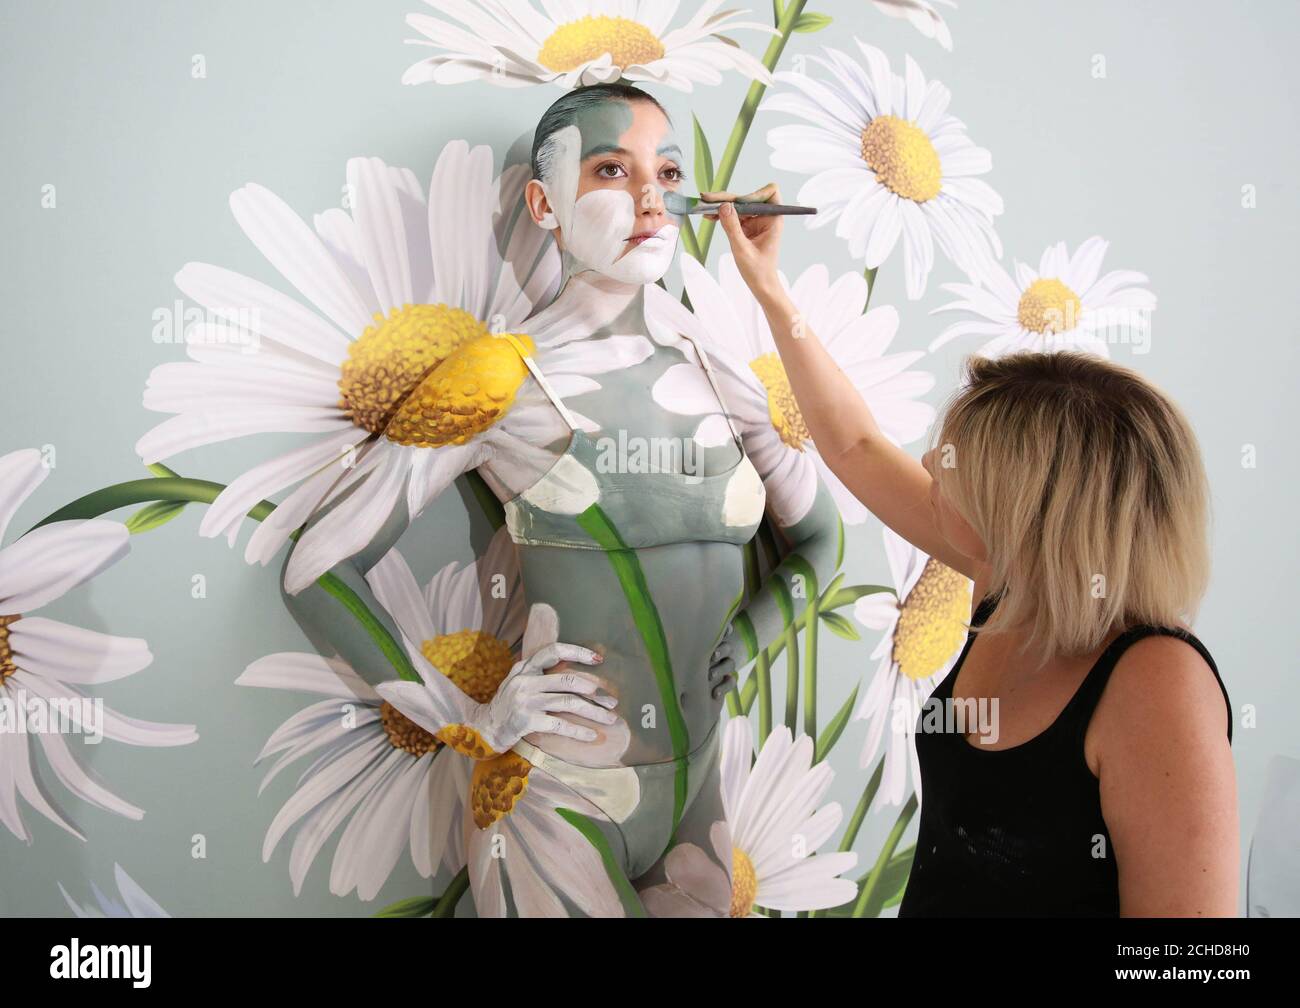 SOLO PER USO EDITORIALE Daisy Lowe è stato camuffato in un muro di margherite da Carolyn Roper, il principale artista di body paint al mondo, per mostrare la funzione Ambient Mode del TV Samsung QLED. Il Foto Stock